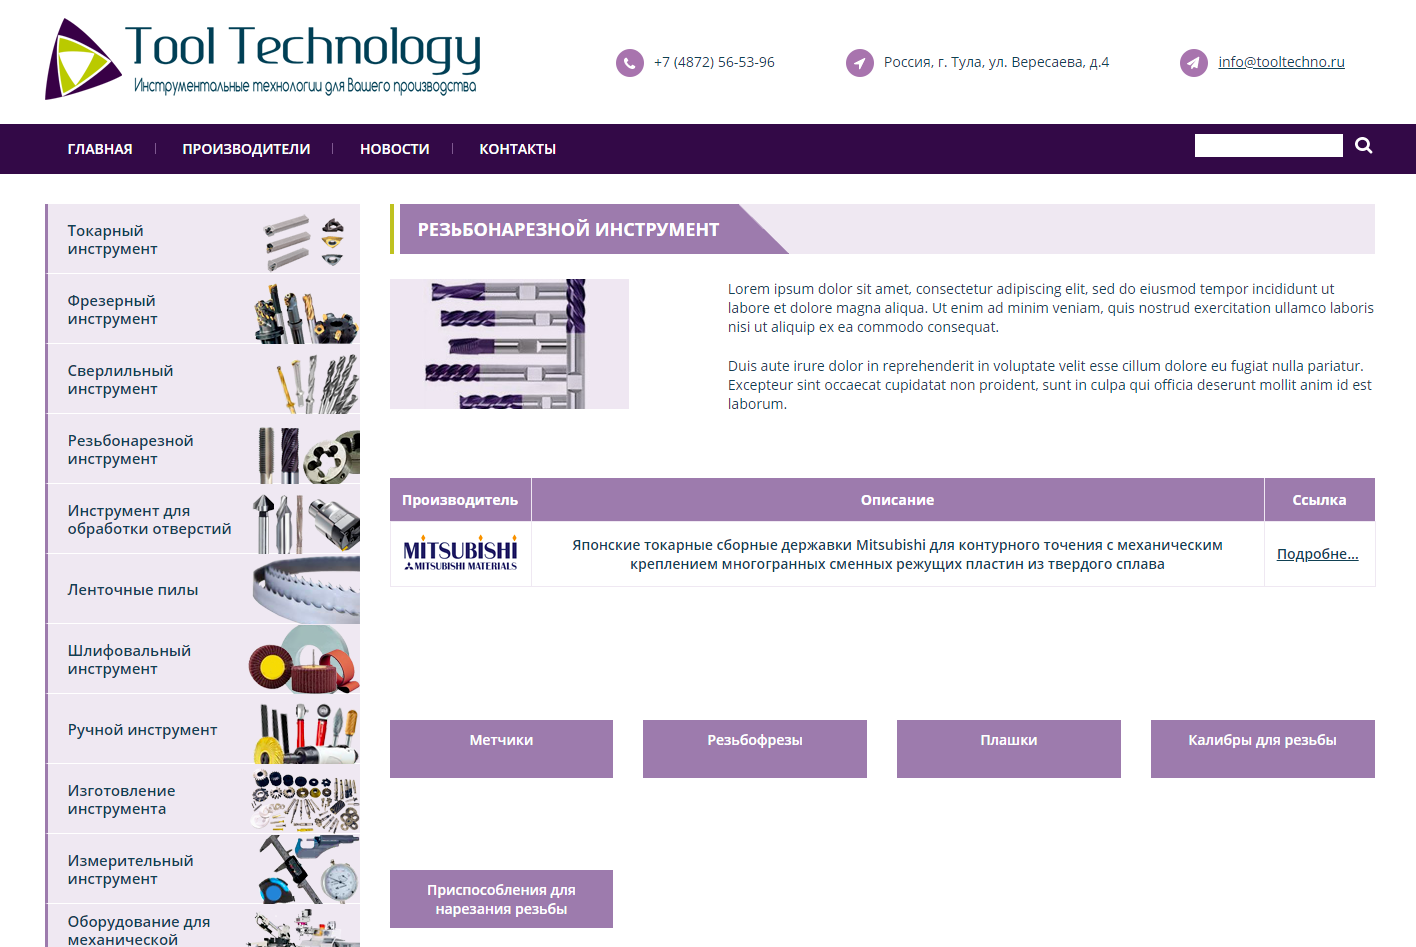 Сайт дистрибъютера производственных комплектующих ToolTechno